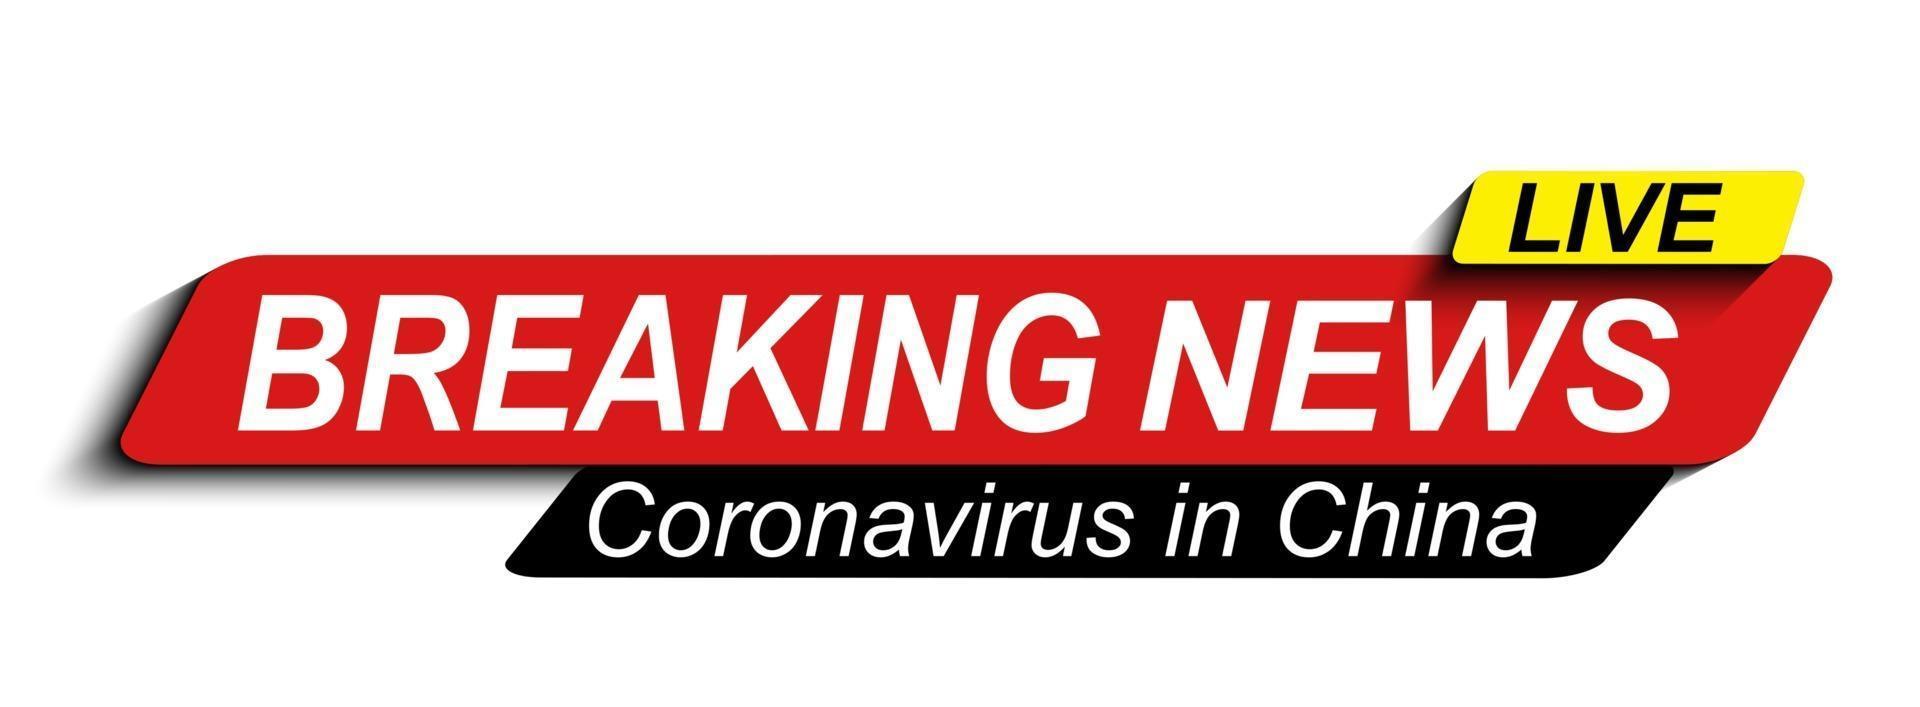 live nyheter om coronavirus stämpel mers-cov. 2019-ncov är ett begrepp av en medicinsk hälsoprisk för pandemi med farliga celler i Mellanöstern andningssyndrom. vektor illustration